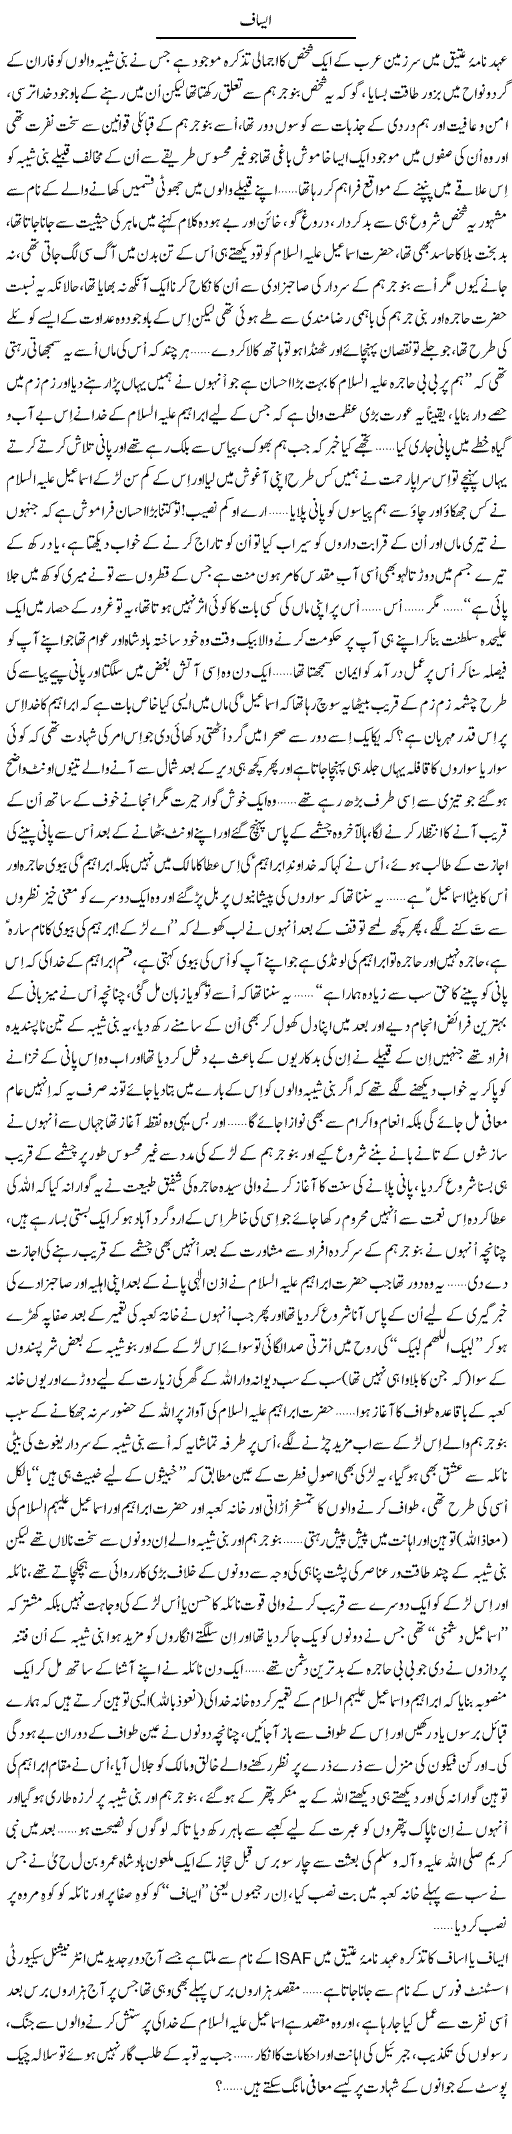 Hazrat Ibrahim A.S Express Column Aamir Liaquat 2 December 2011